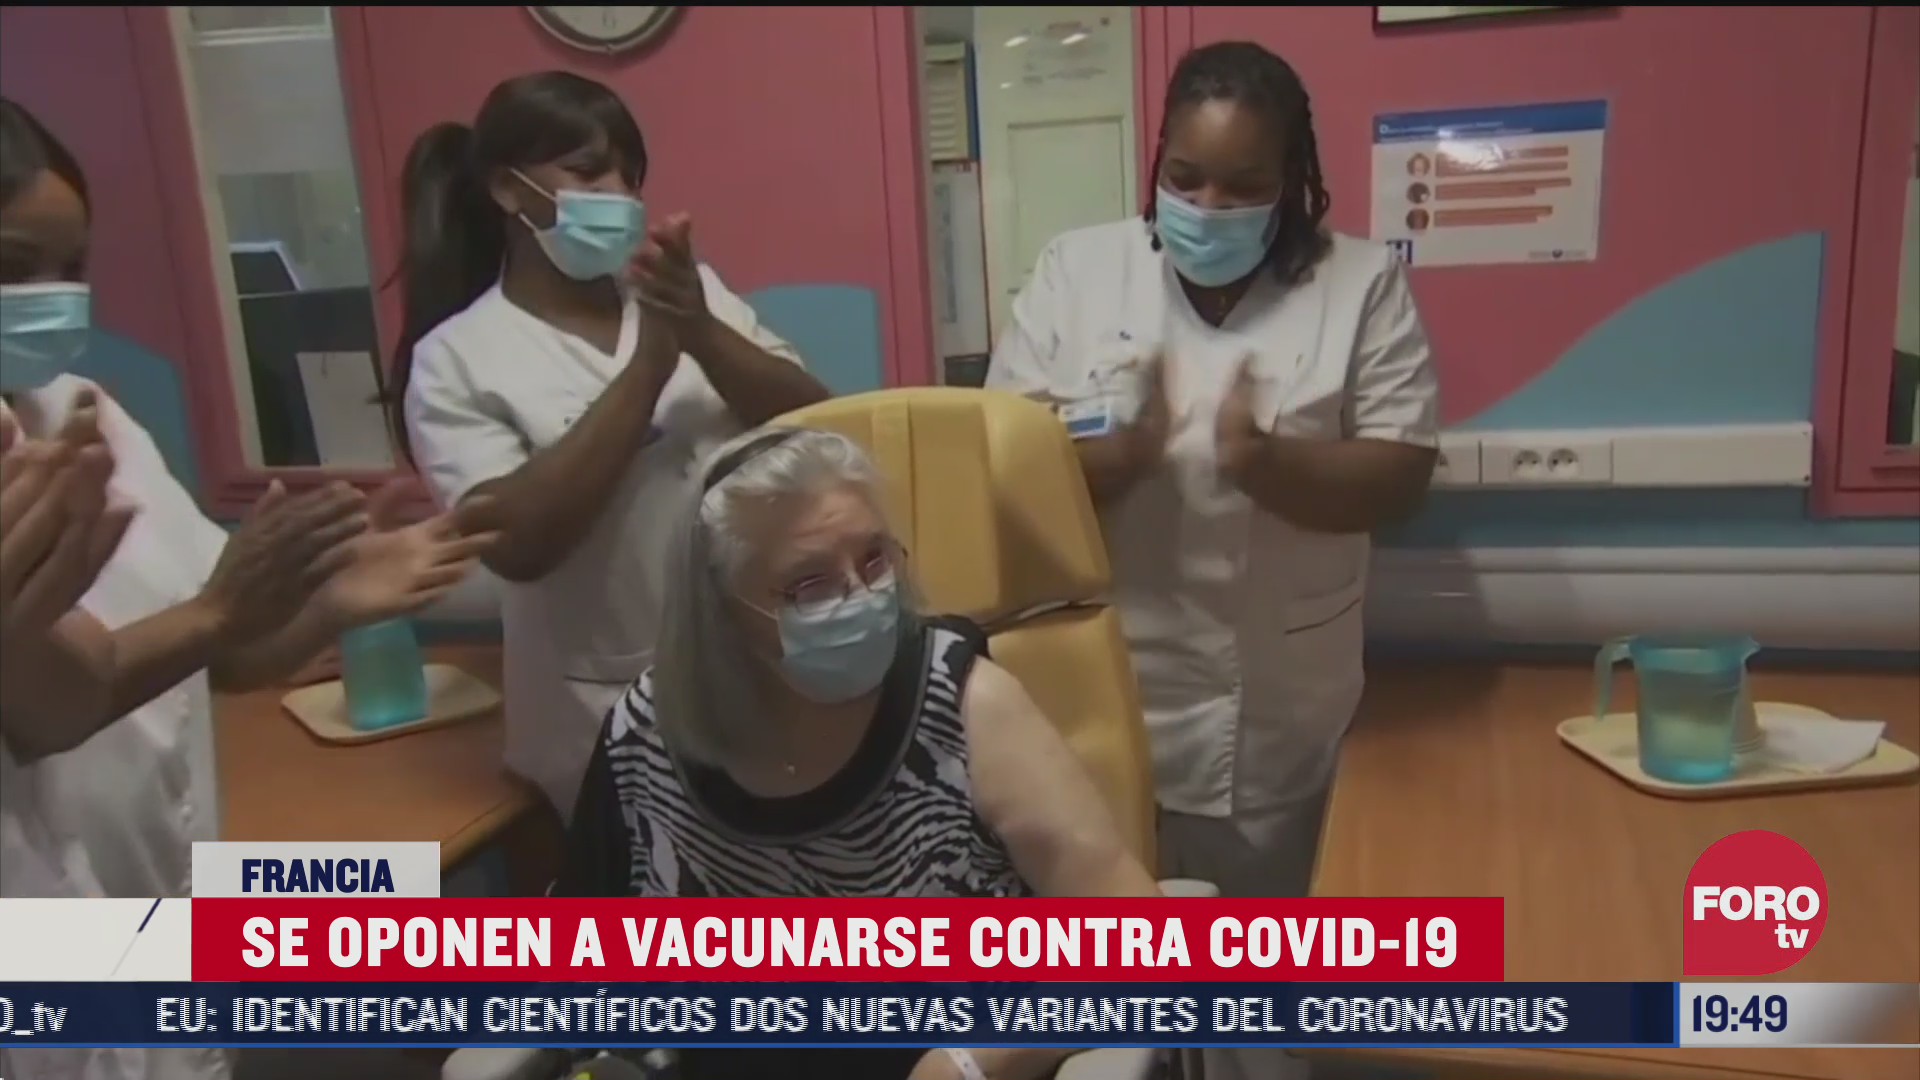 francia registra fuerte oposicion a vacuna contra covid